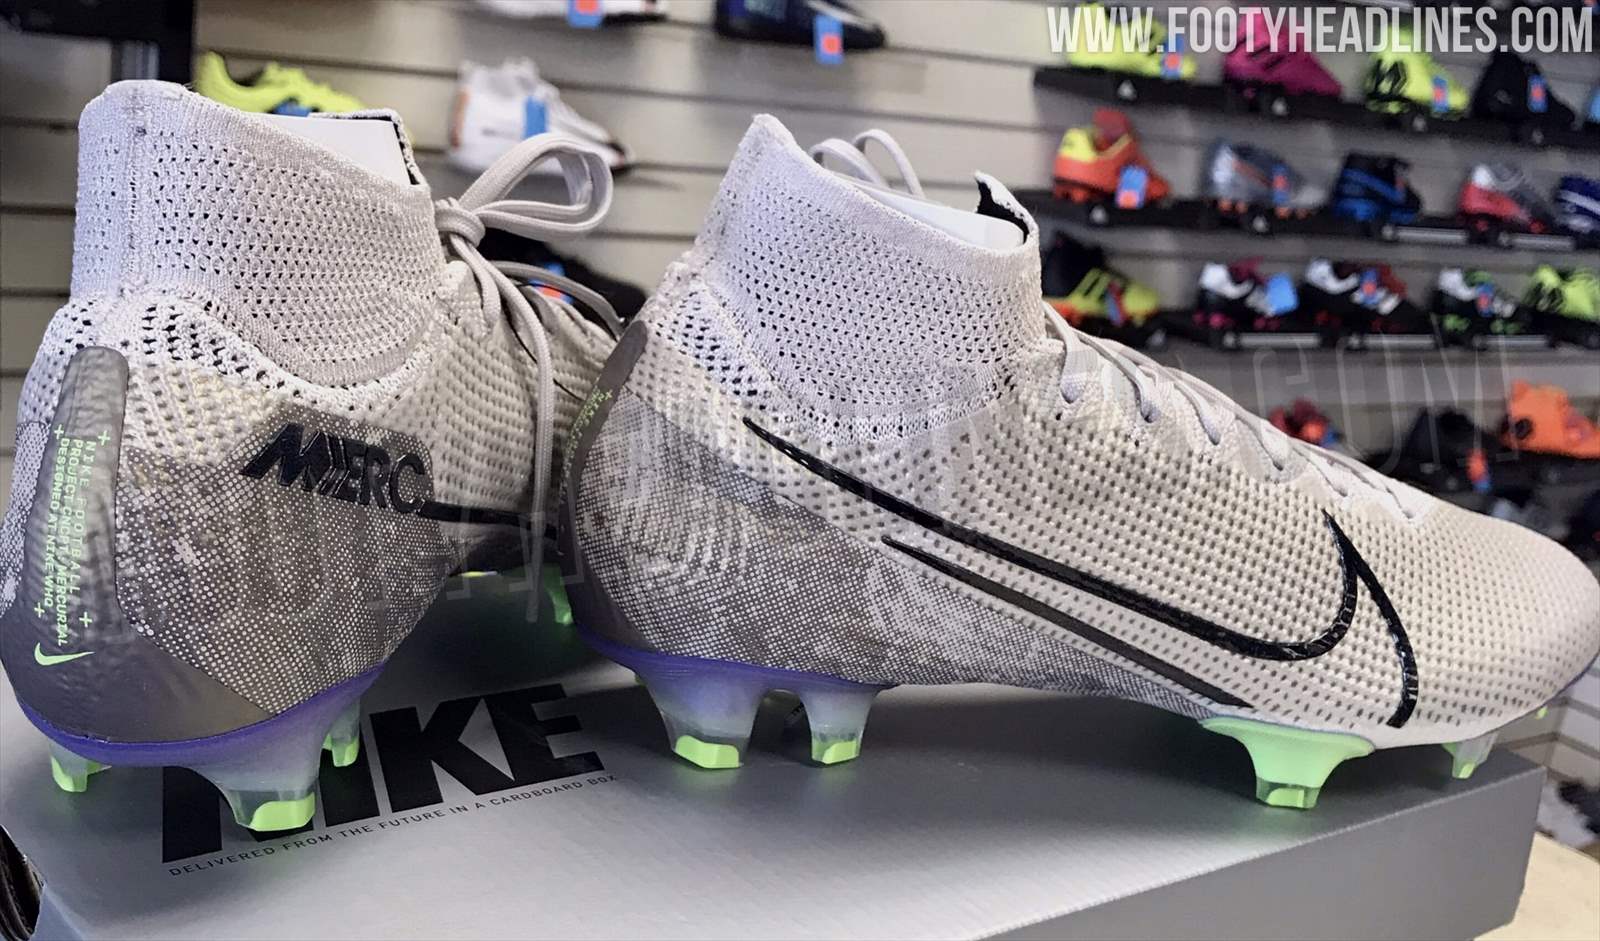 Nike Mercurial Superfly VII Elite Football' Boots Sergiño Dest Debuts Unreleased Colorway - Footy